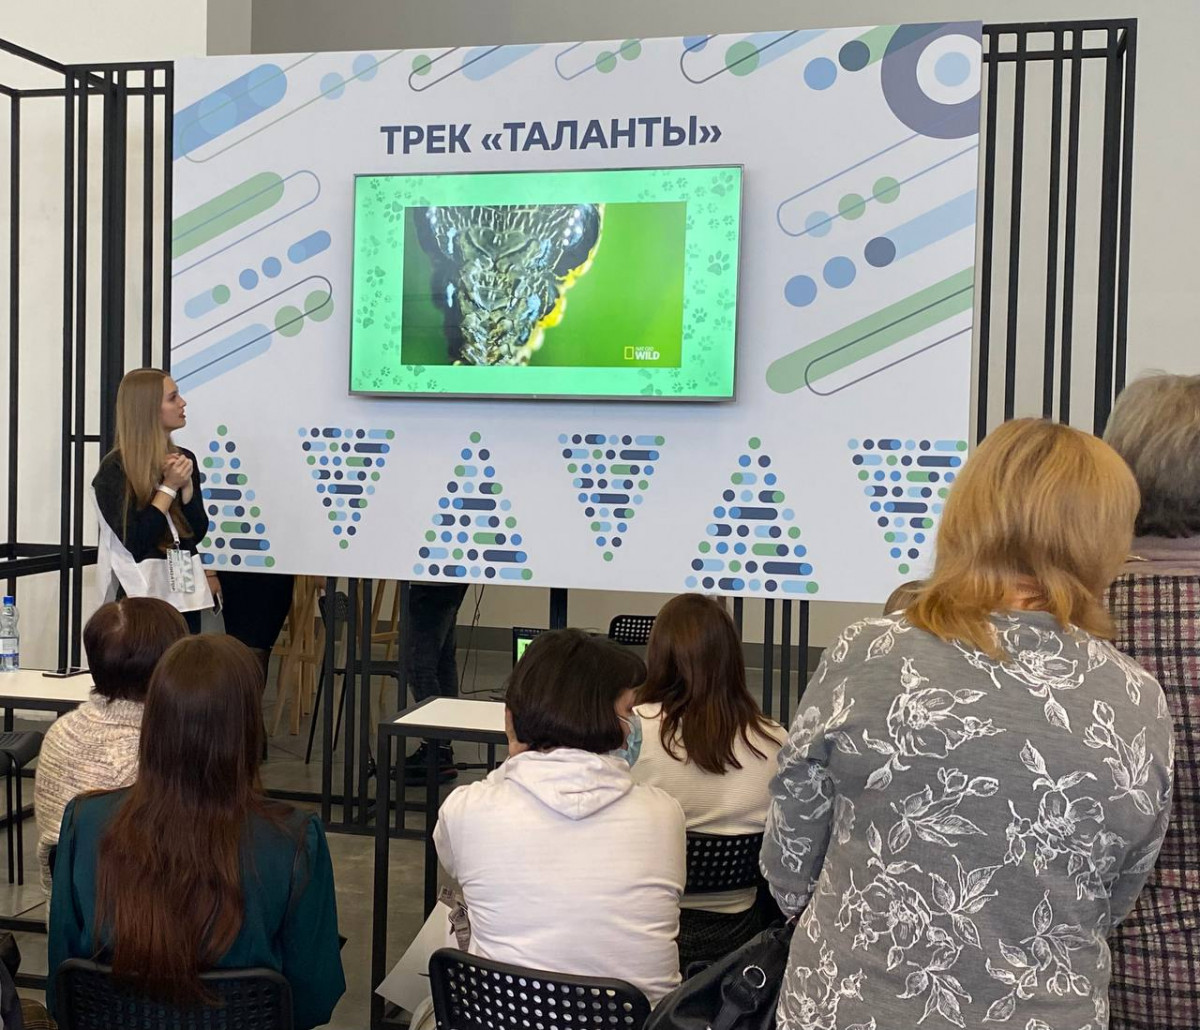 Выставку лучших практик и достижений региональной экосистемы образования провели на Нижегородской ярмарке